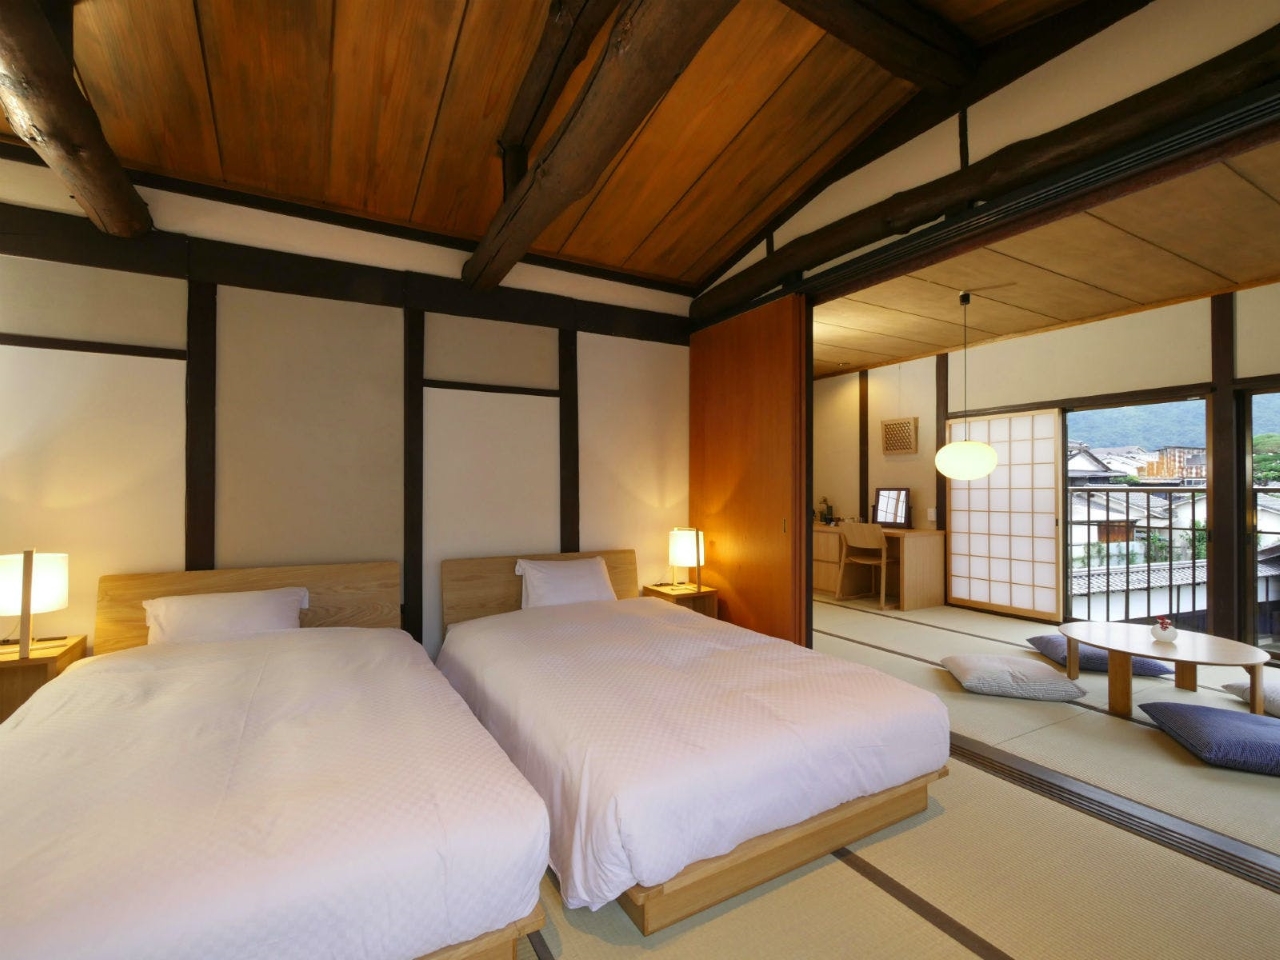 โรงแรม บูติก เมืองทาเคฮาระ Takehara จังหวัดฮิโรชิม่า